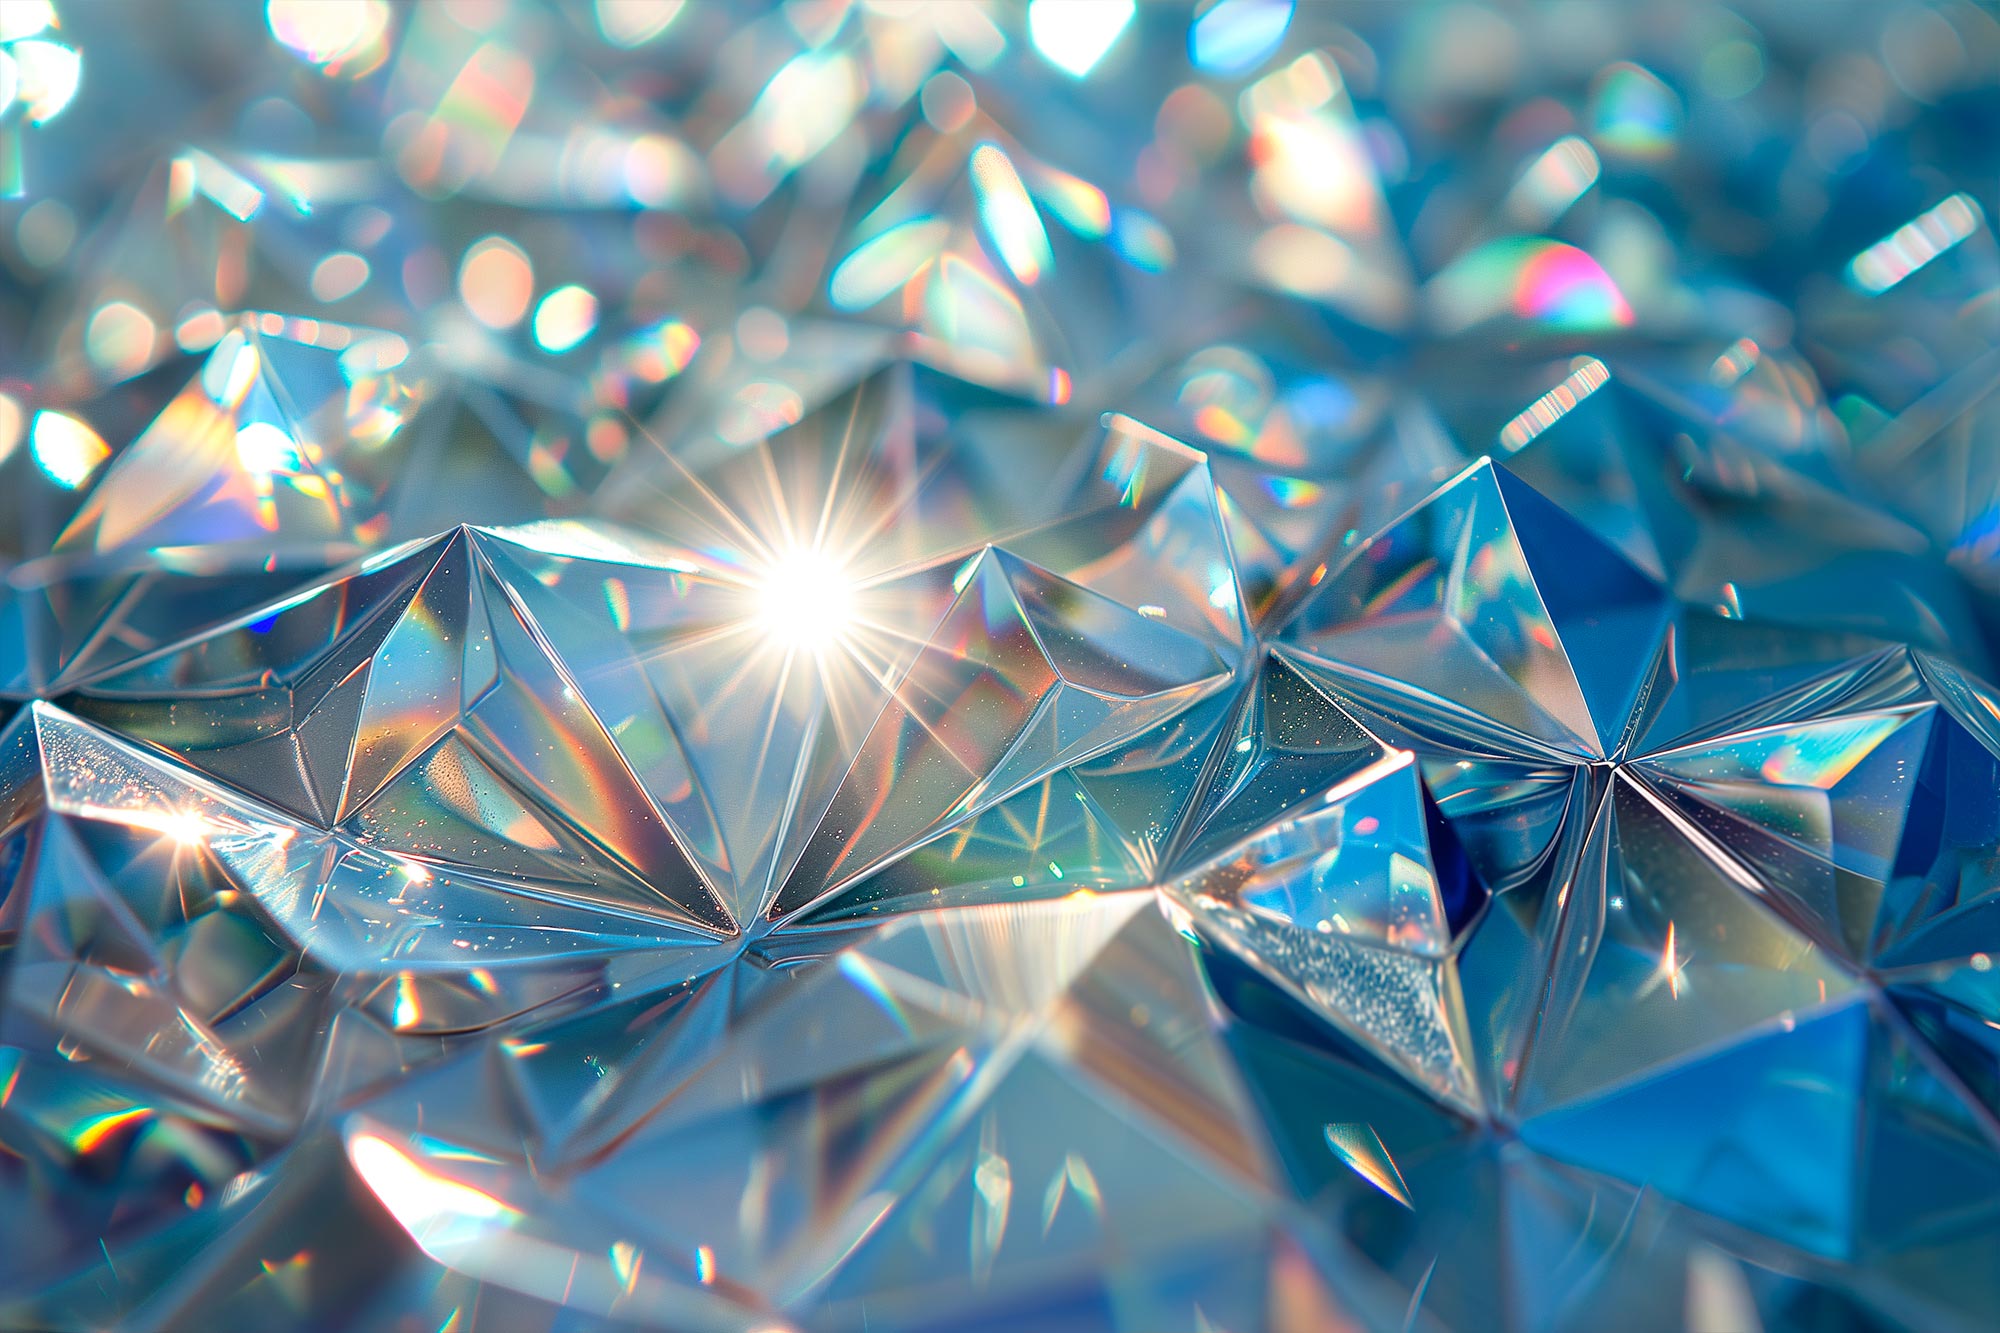 Un nouveau principe pionnier : des chercheurs coréens ont découvert un phénomène révolutionnaire dans les cristaux liquides